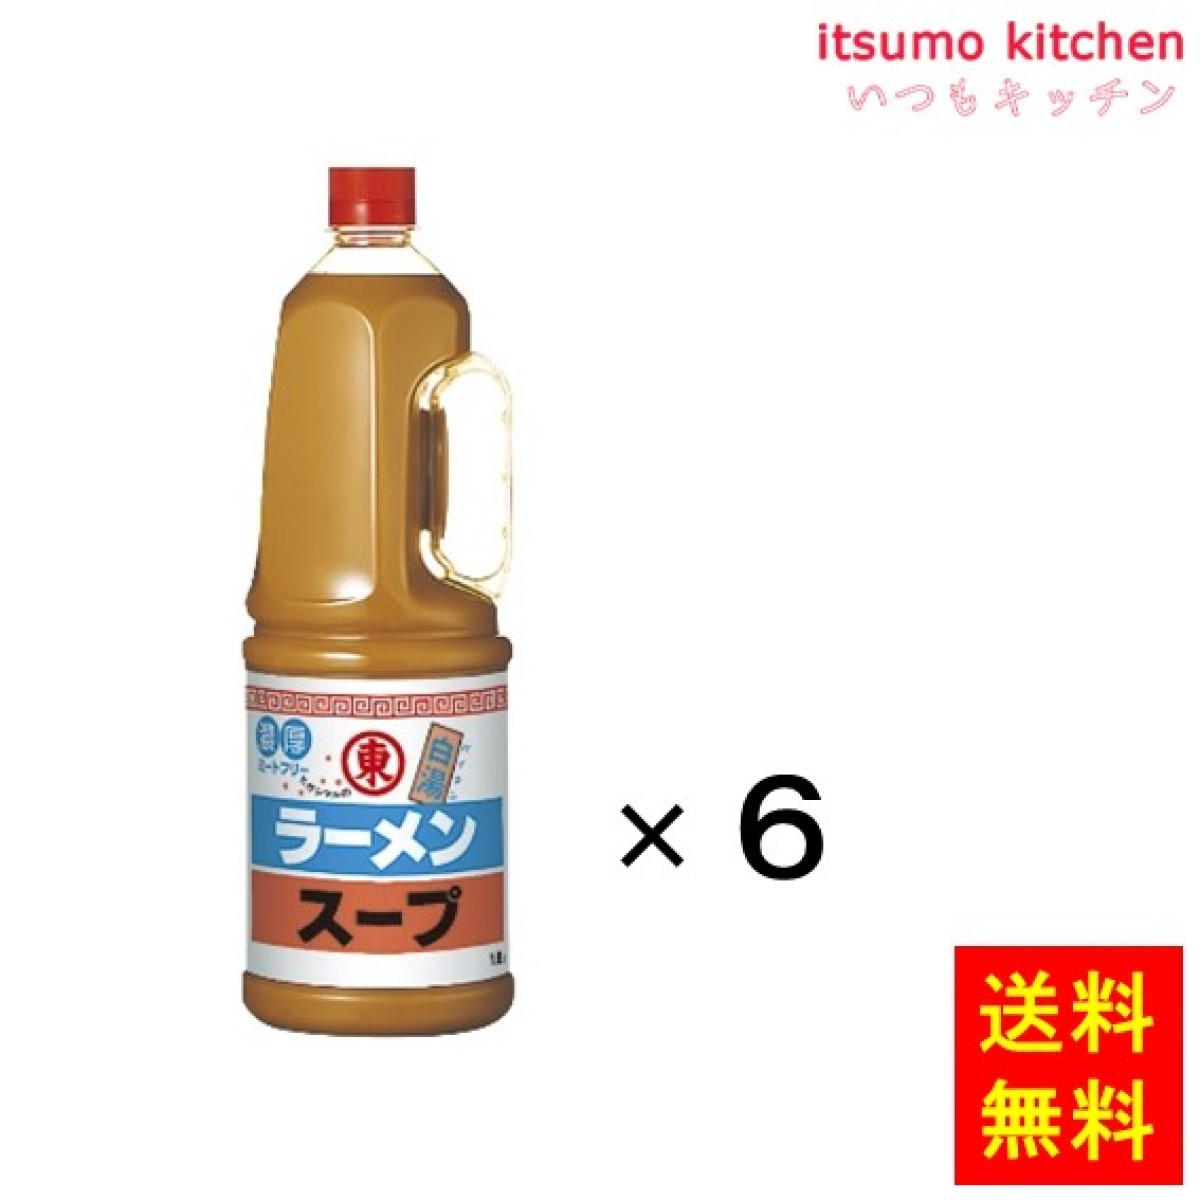 195914x6【送料無料】ラーメンスープ 白湯 1.8Lx6本 ヒガシマル醤油 - いつもキッチン